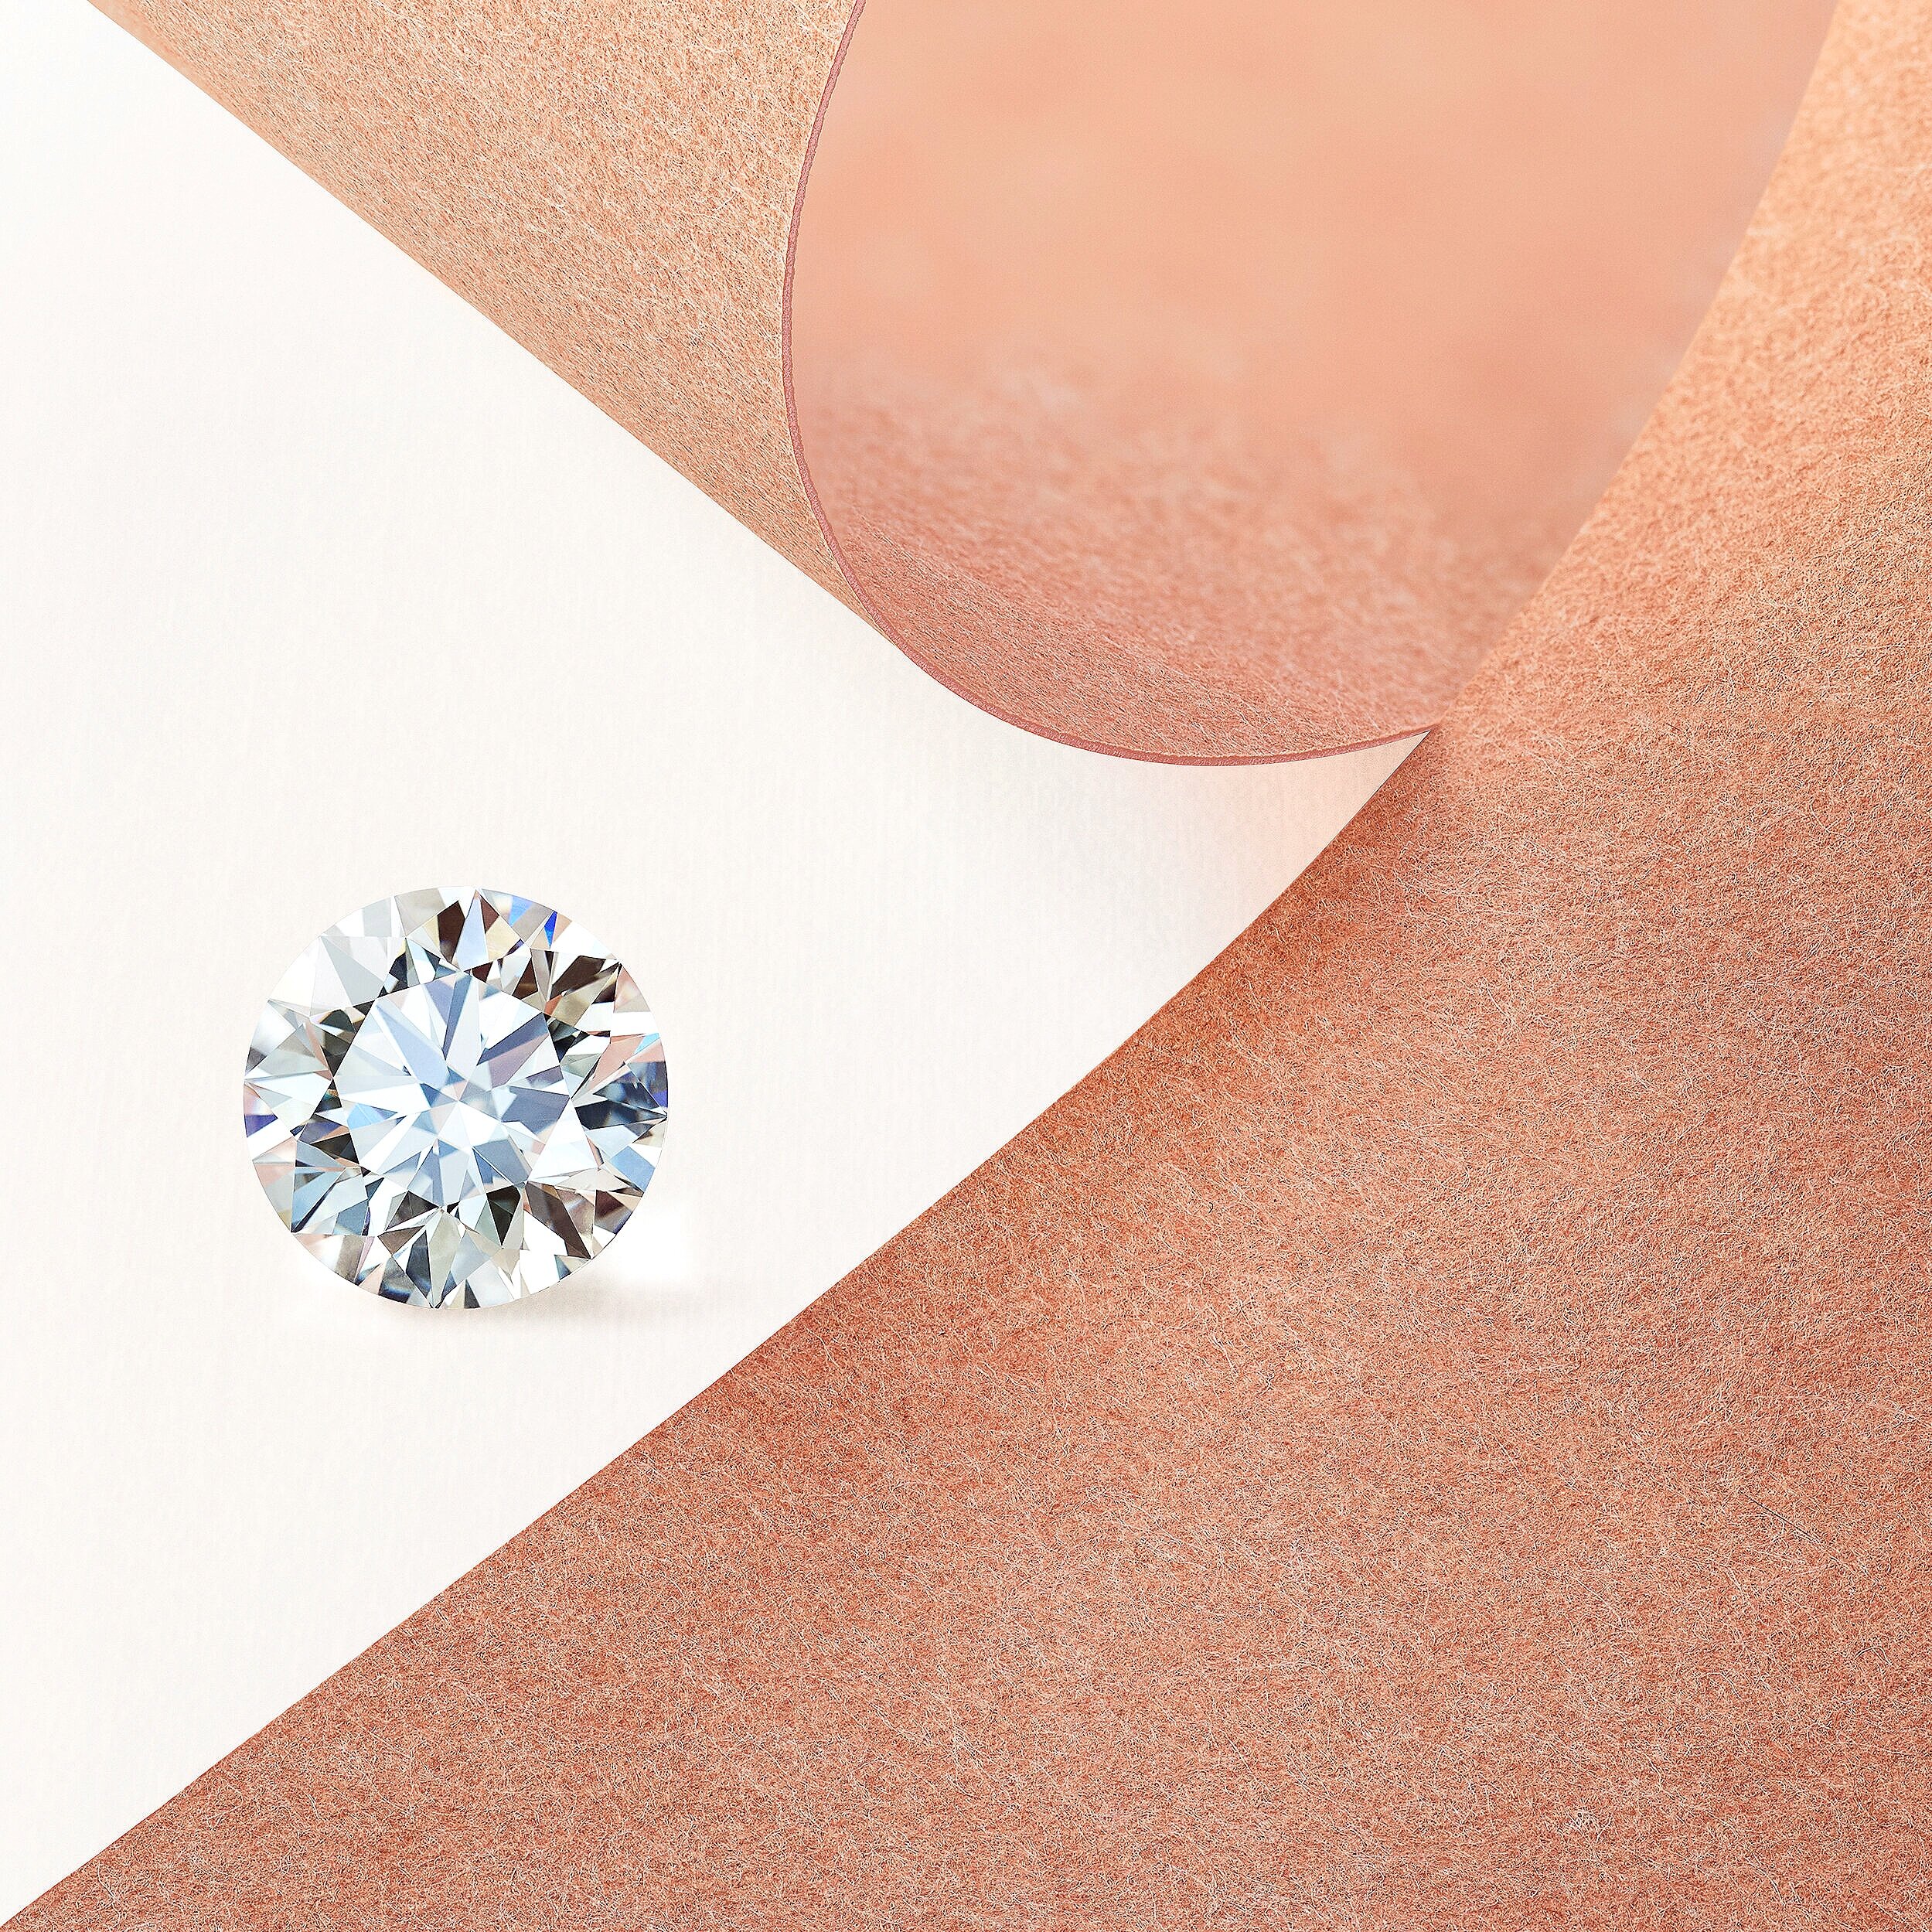  Loose diamond shot for De Beers Diamond Jewellers 